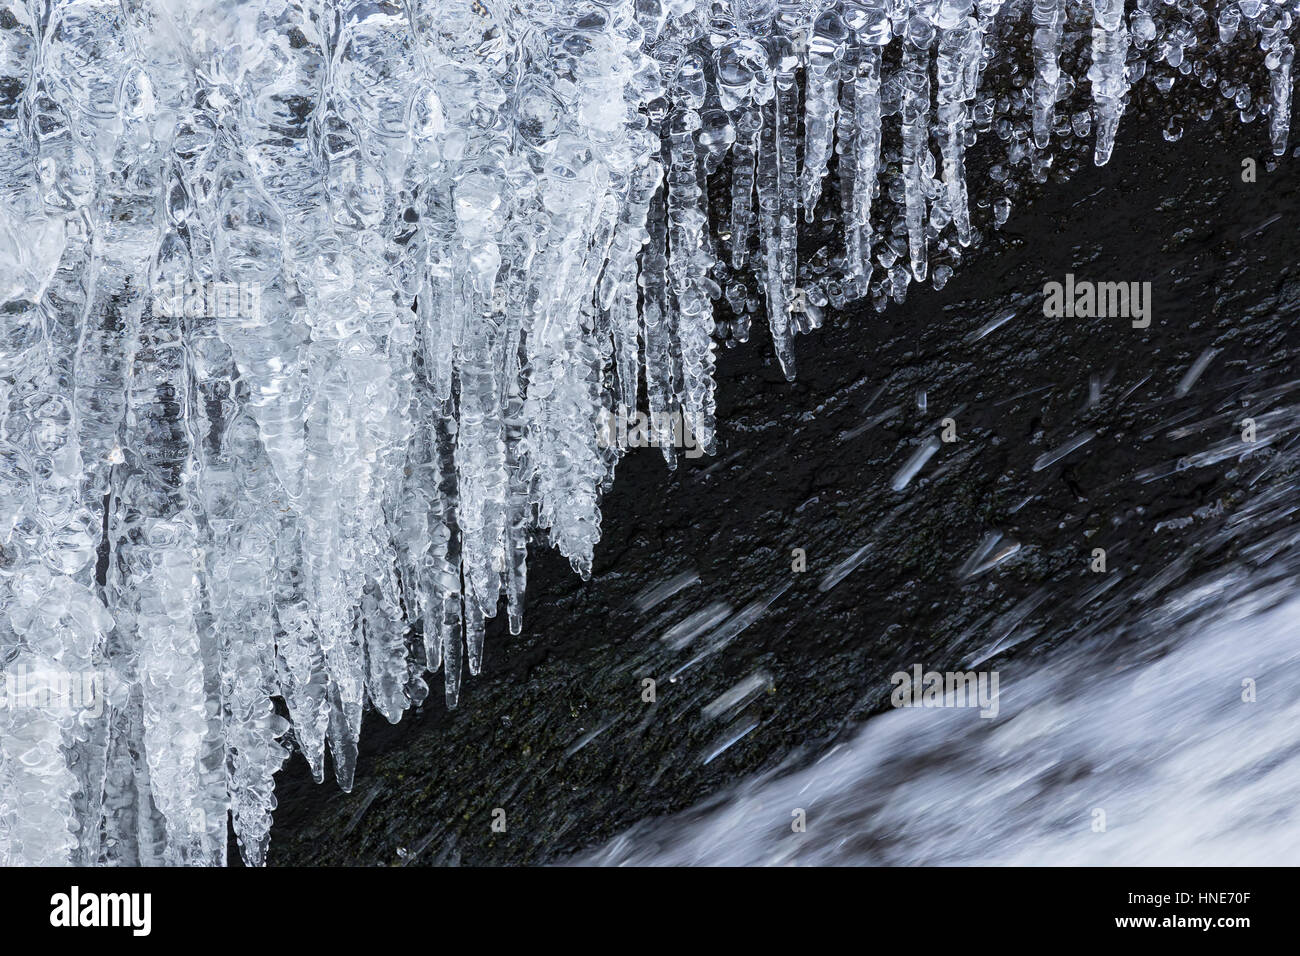 Glaçons suspendus au-dessus de l'eau congelée streaming de cascade en hiver Banque D'Images